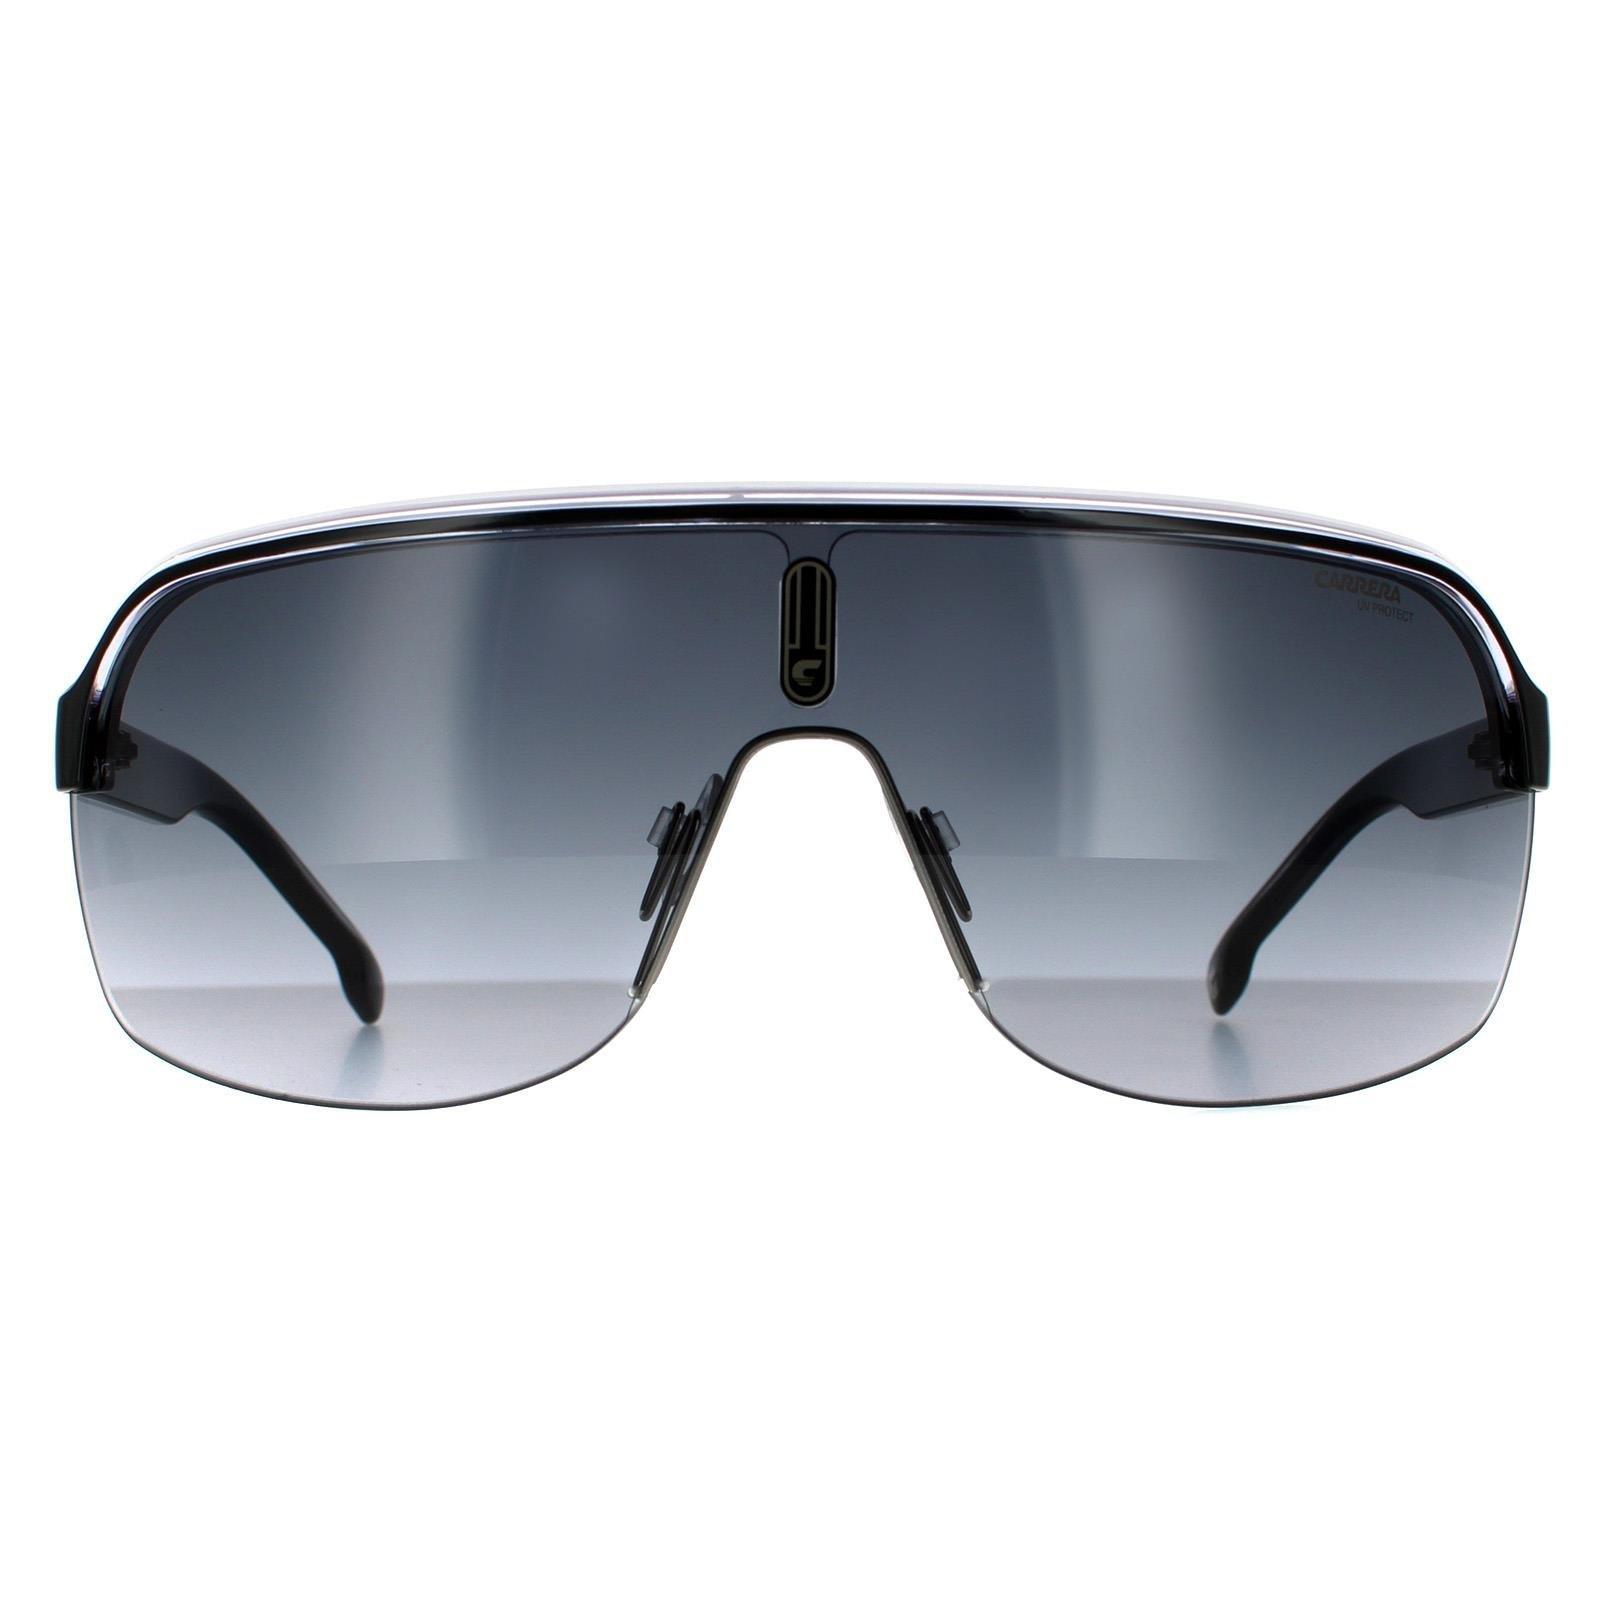 черные солнцезащитные очки moab off white цвет black dark grey Черно-белые темно-серые солнцезащитные очки с градиентом Shield Carrera, черный